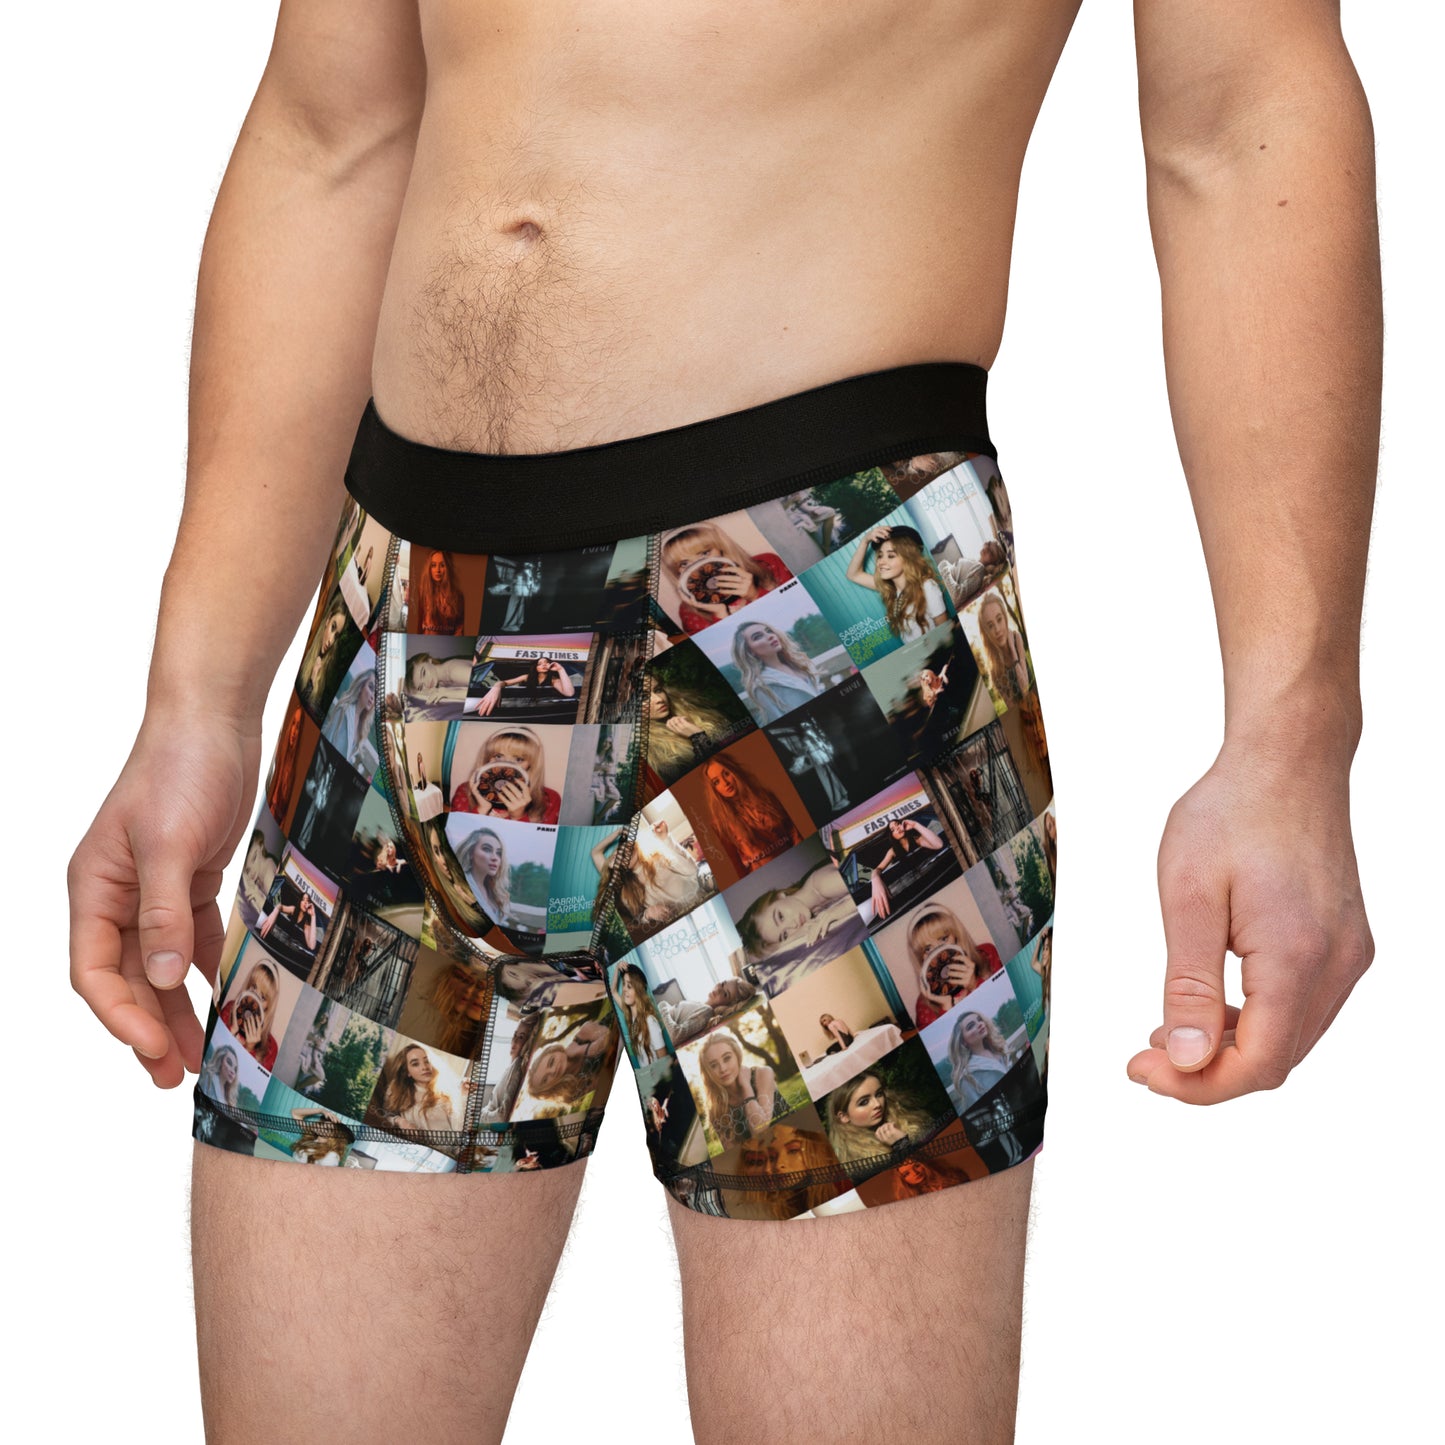 Sabrina Carpenter Album Cover Collage Men's Boxers